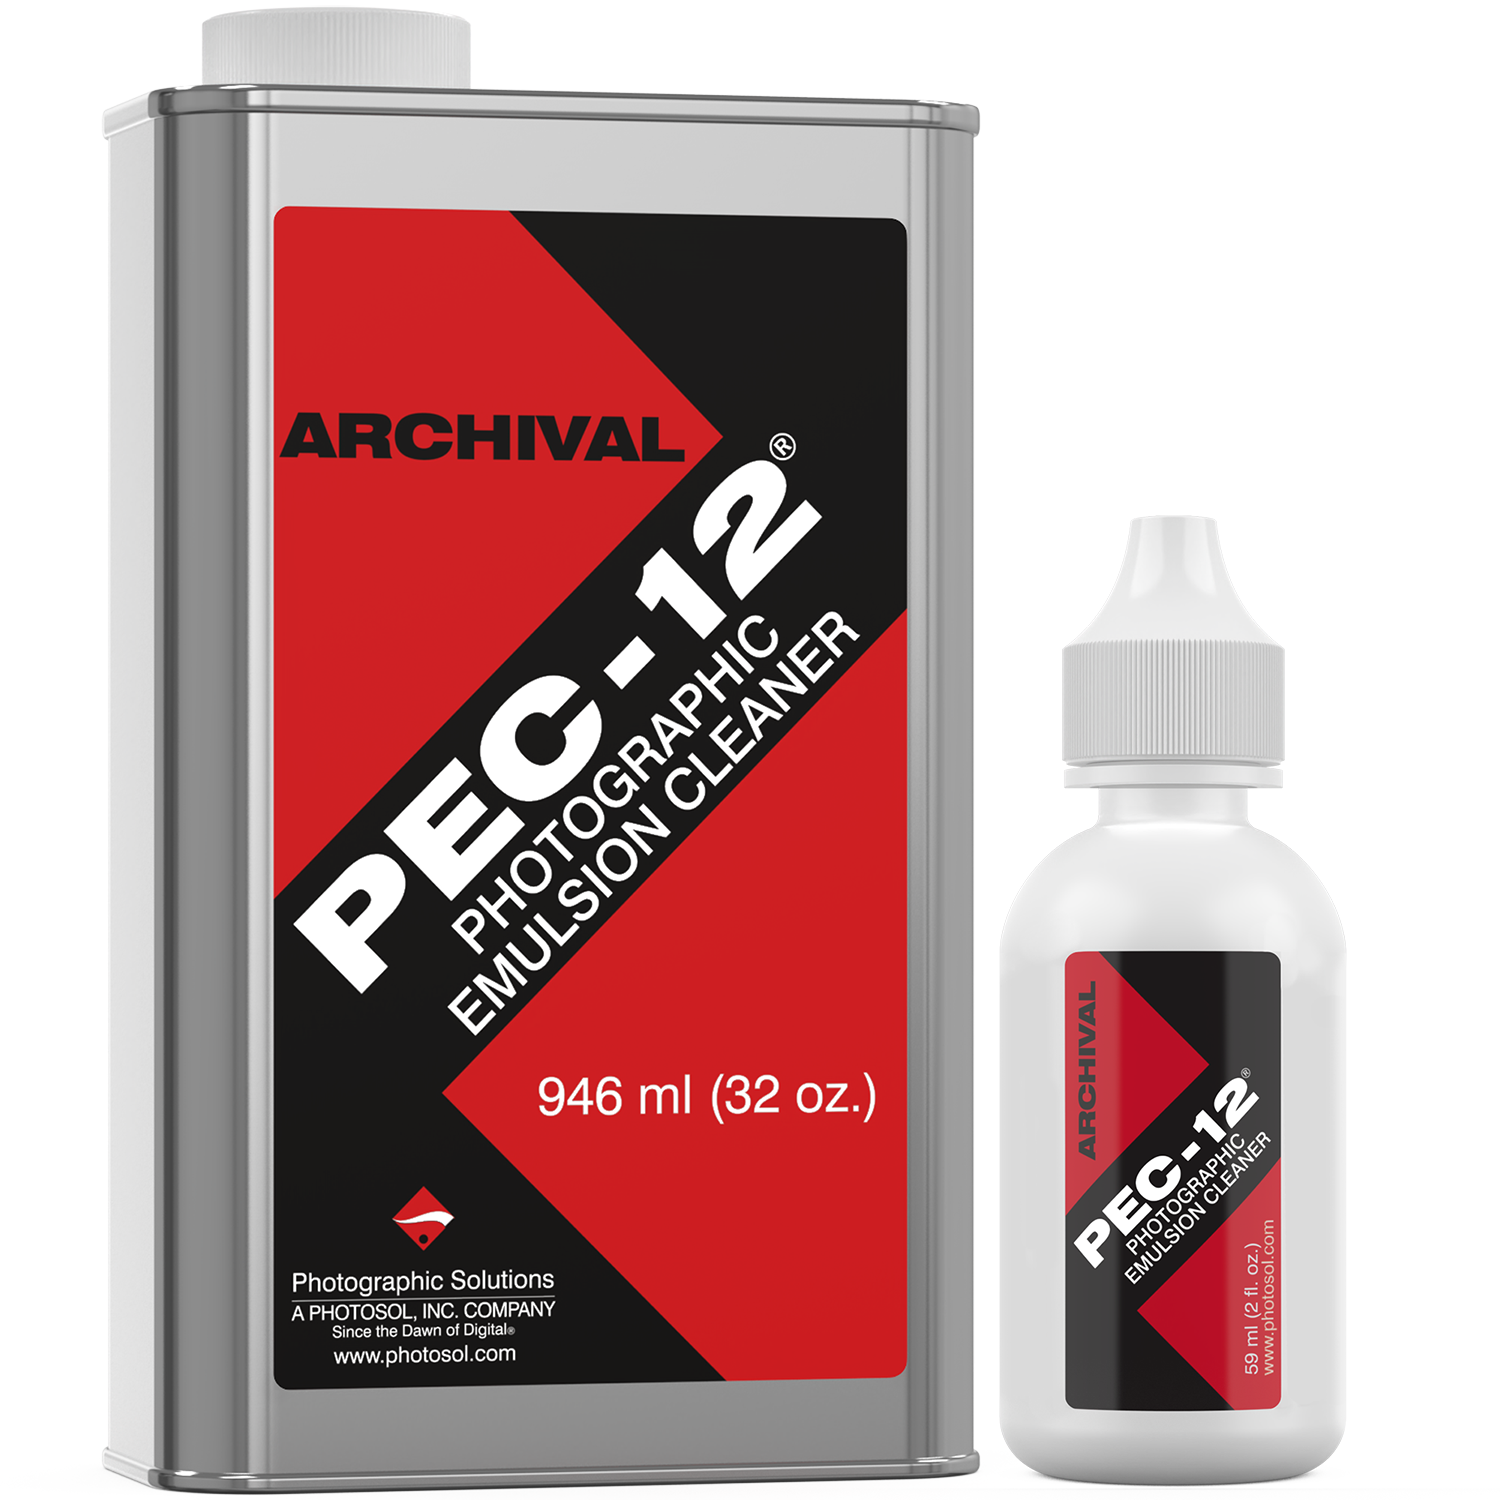 PEC-12 Photographic Emulsion Cleaner